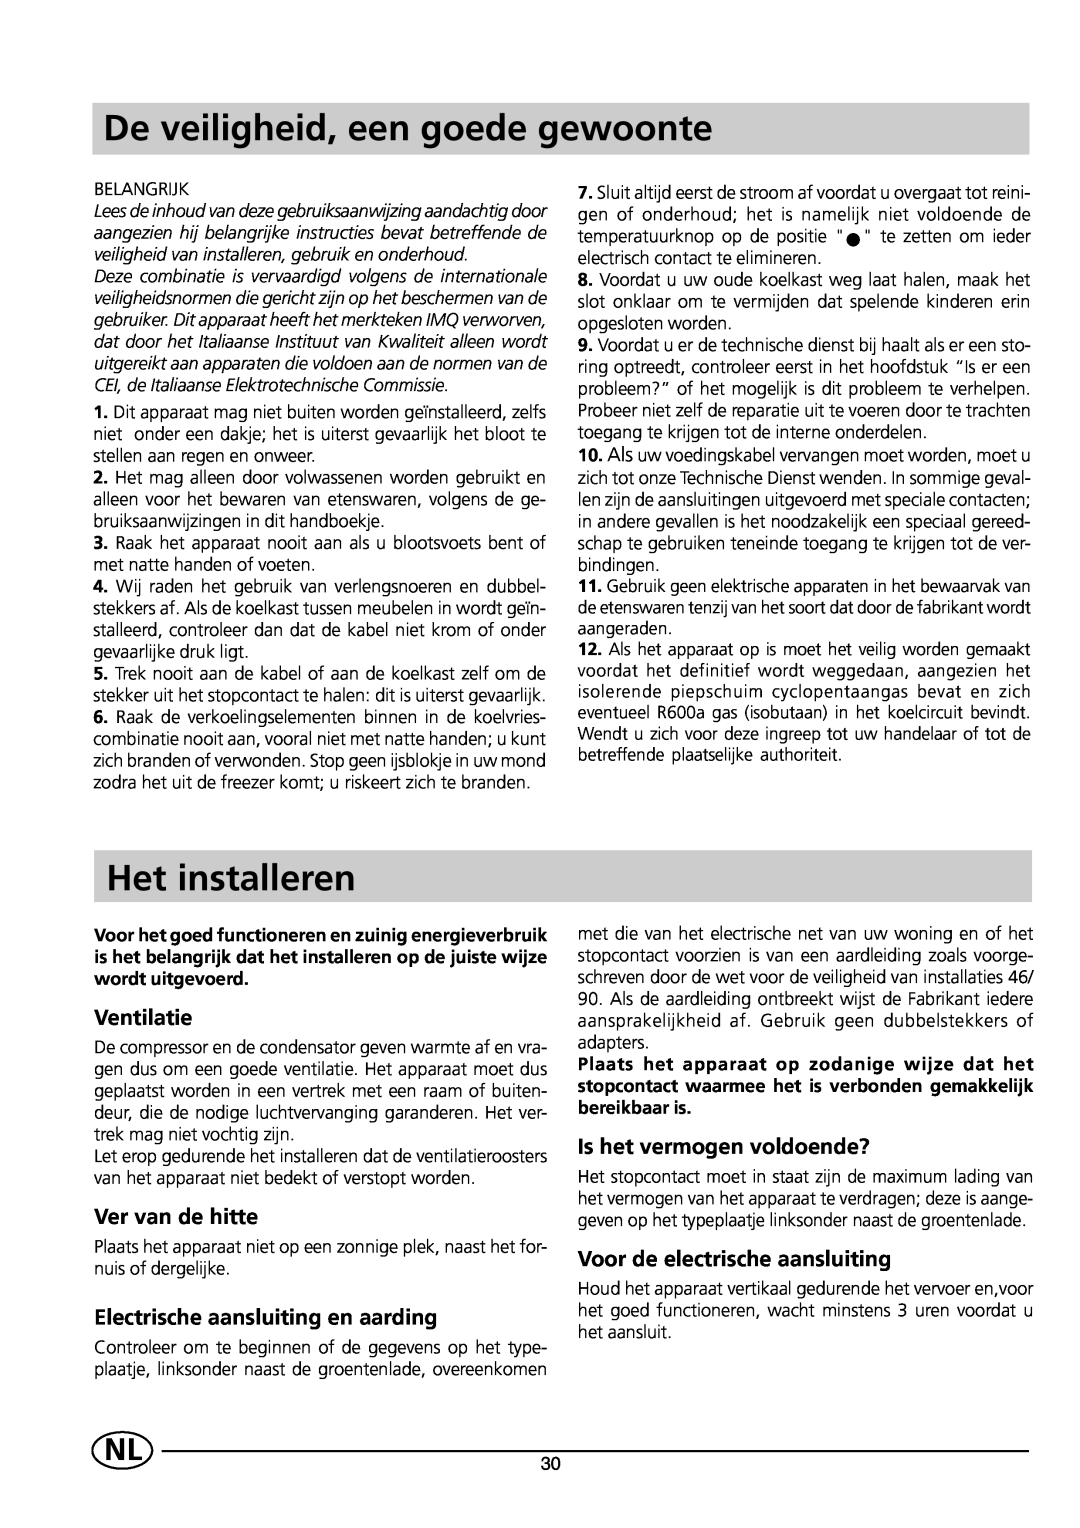 Indesit CG 3100 manual De veiligheid, een goede gewoonte, Het installeren, Ventilatie, Ver van de hitte 